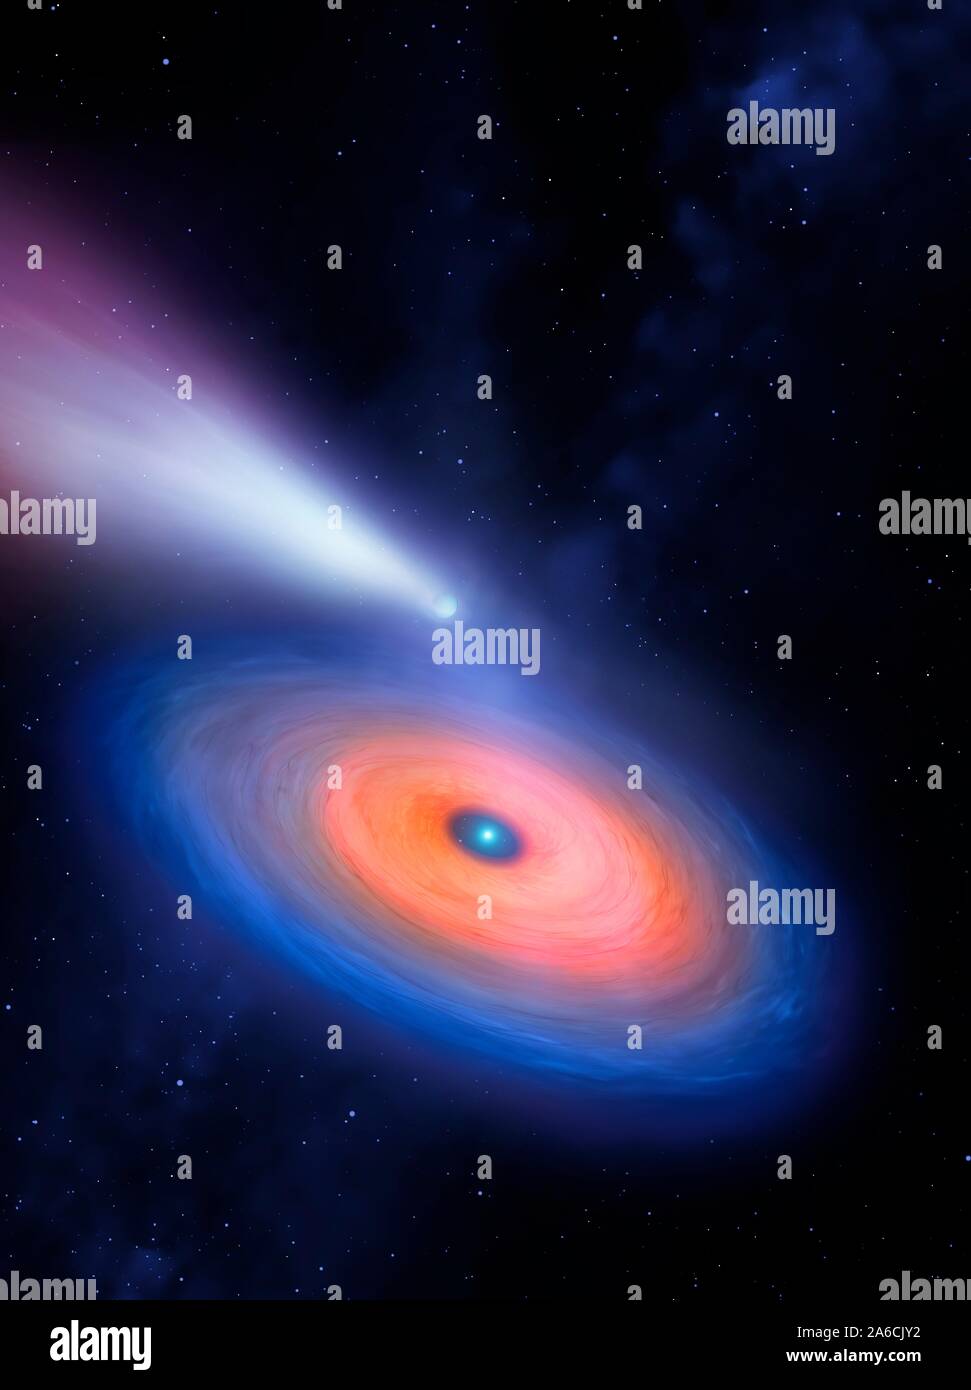 Gli astronomi hanno scoperto una stella nana bianca che sembra essere circondato da un tronco di disco del gas. Il disco è stato probabilmente creato da un pianeta gassoso dilaniata dalla sua gravità. Foto Stock